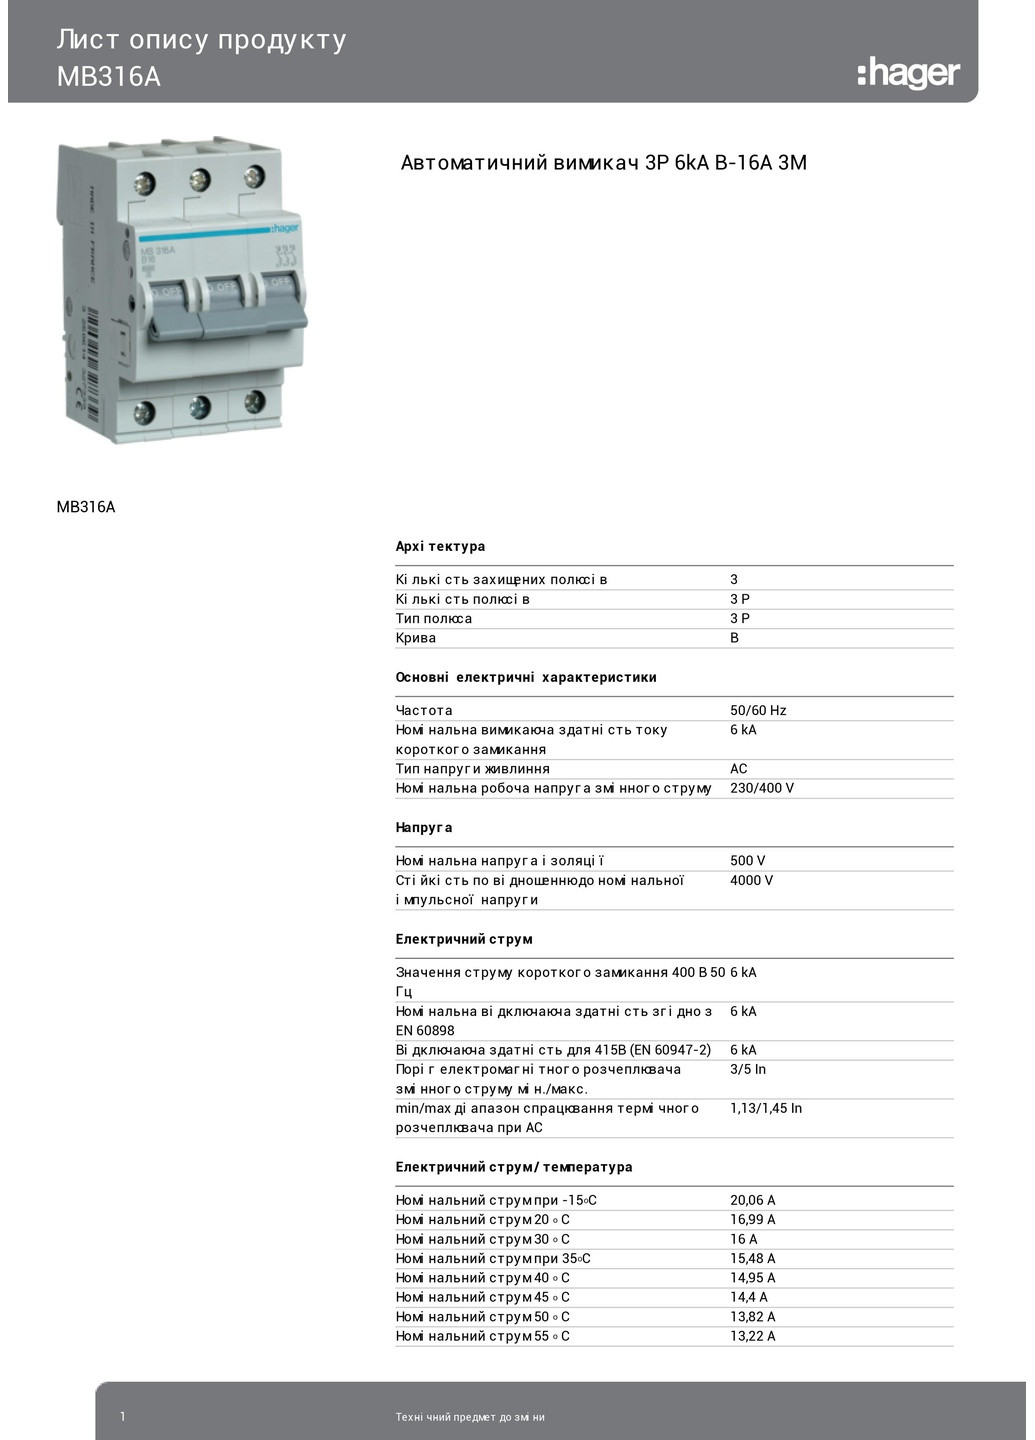 Вводный автомат трехполюсный 16А автоматический выключатель MB316A 3P 6kA B16A 3M (3124) Hager (265535754)